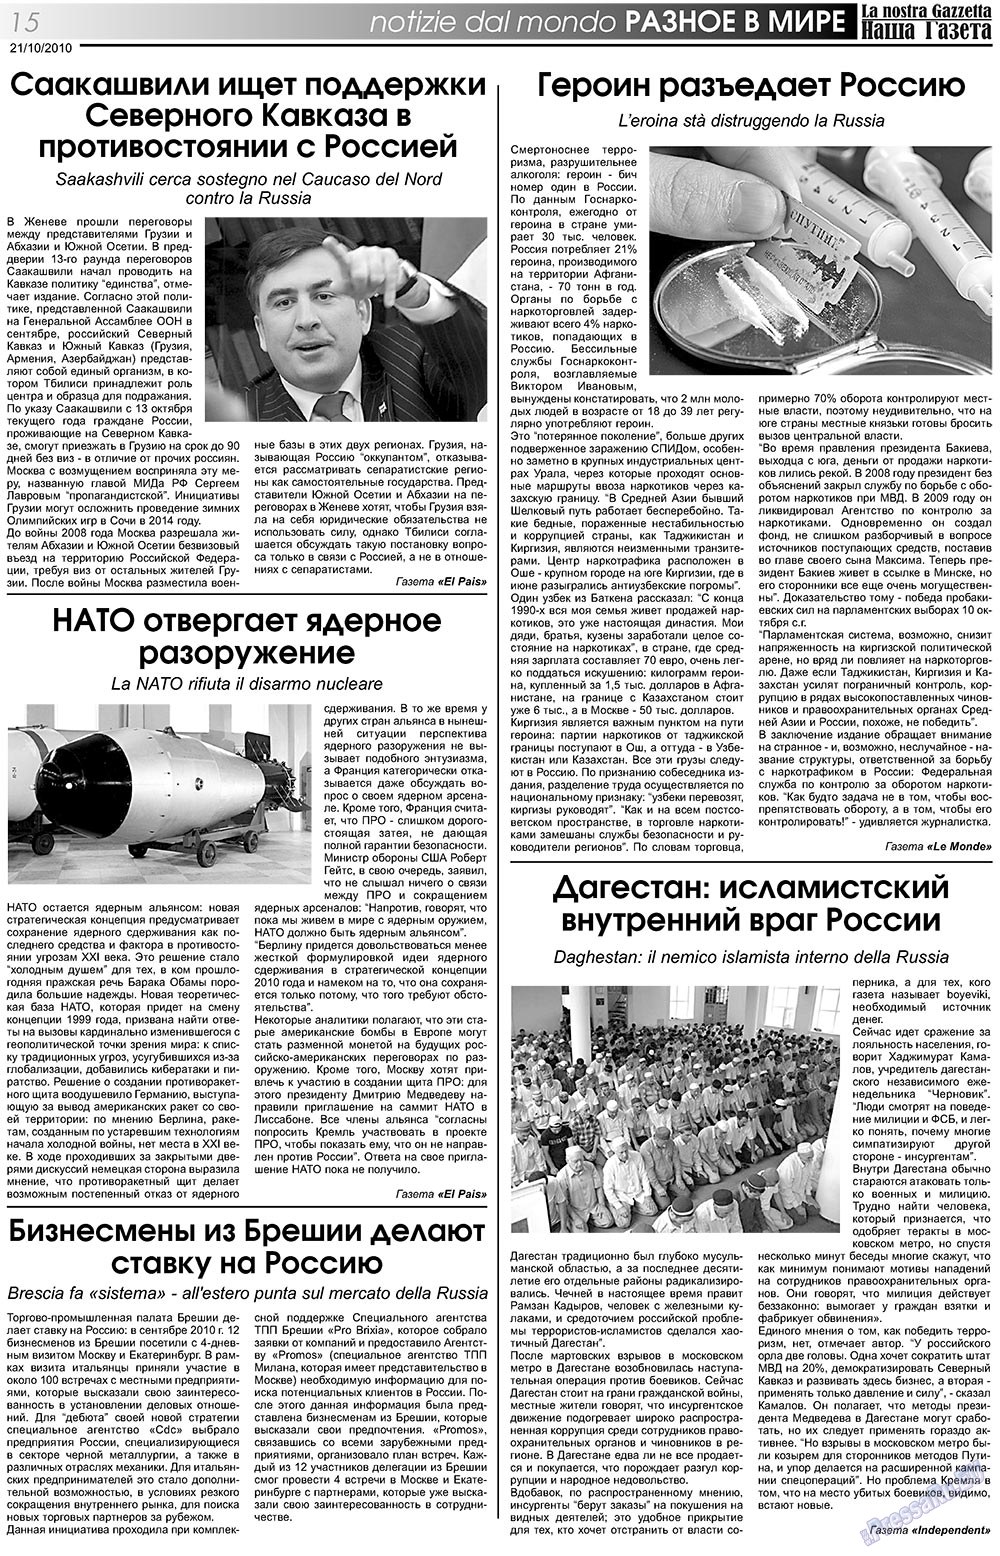 Наша Газета Италия, газета. 2010 №119 стр.15